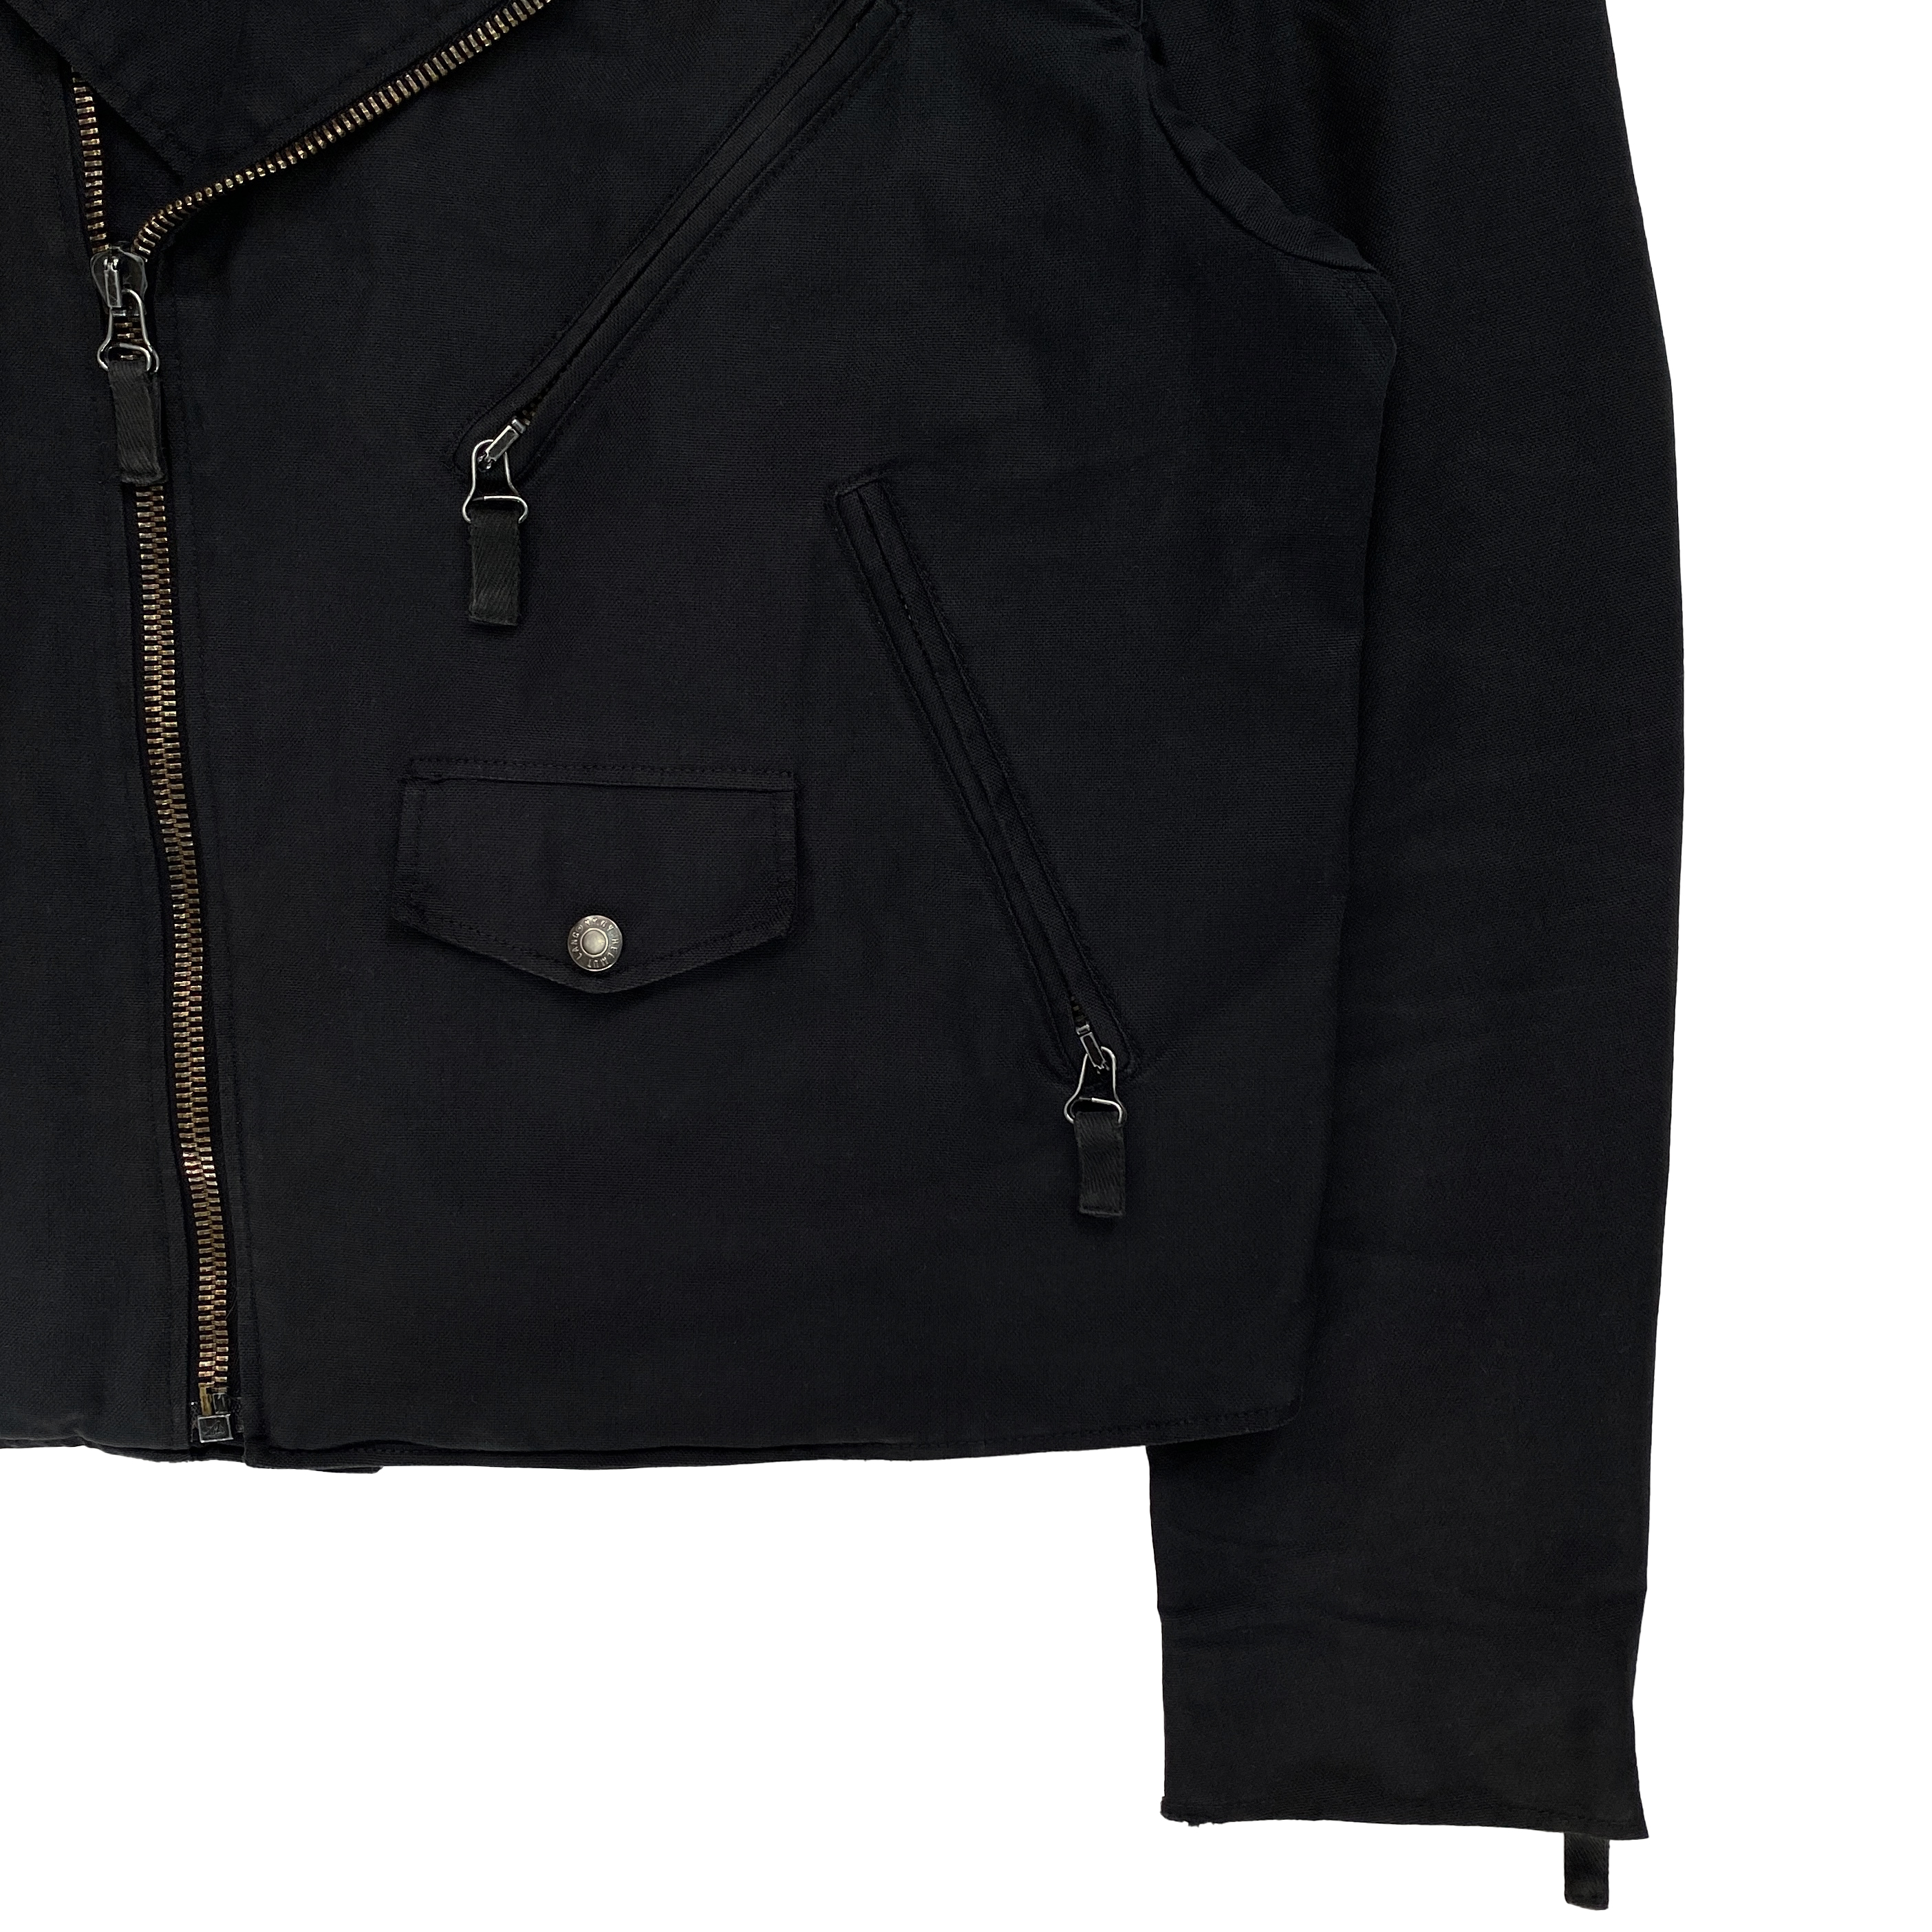 Helmut Lang, S/S 2004 Vintage Cotton Biker Jacket - La Nausée 